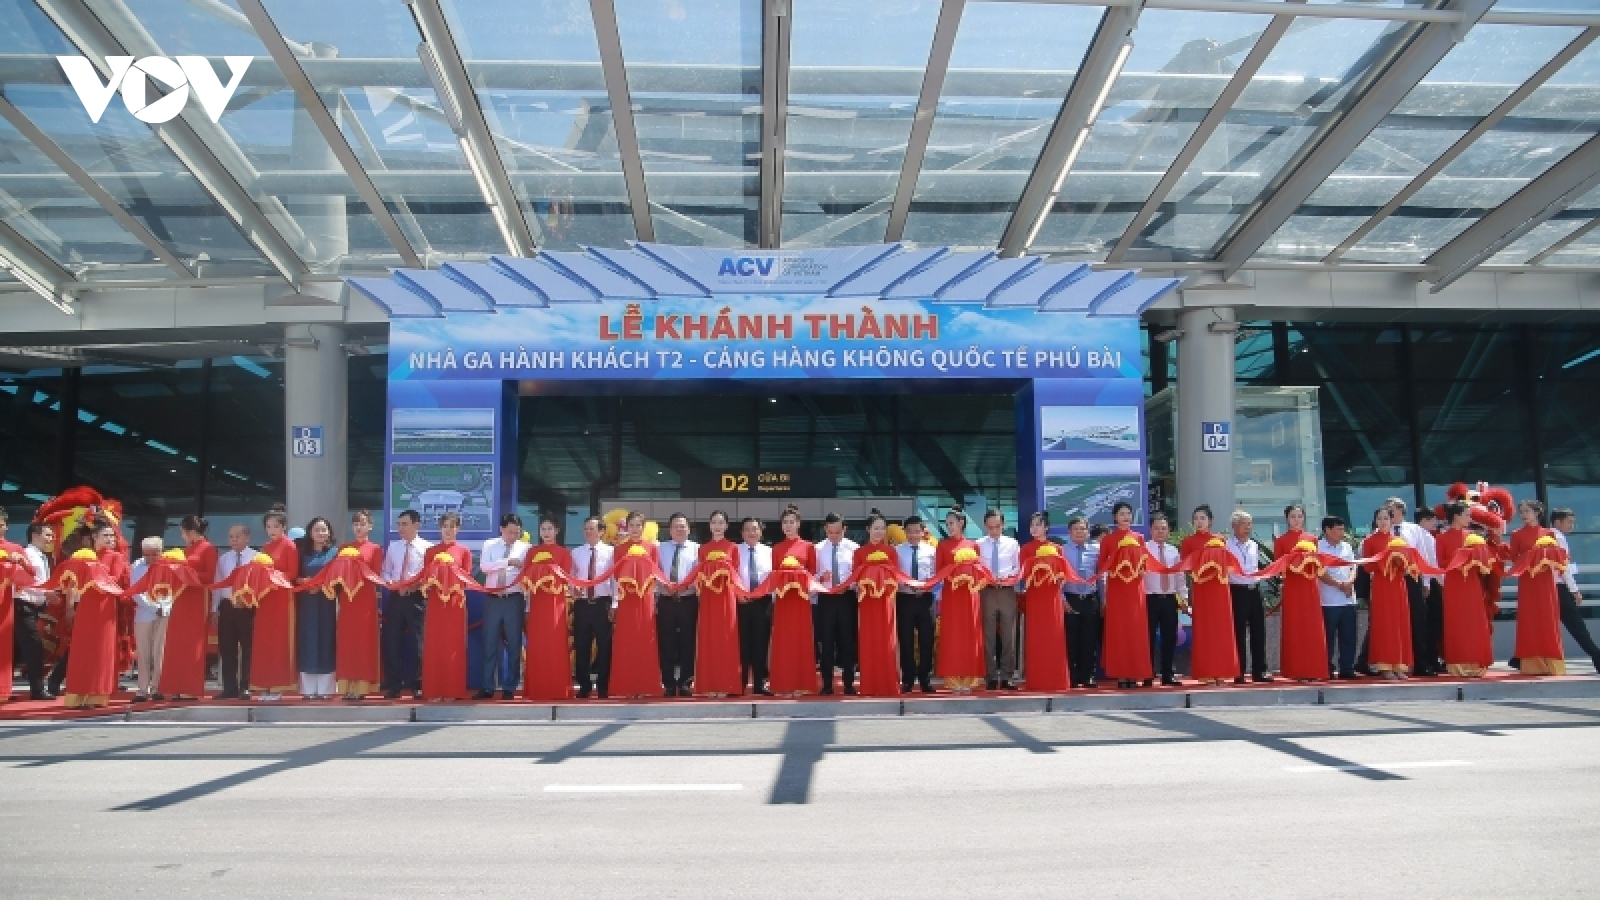 Khánh thành nhà ga T2, Cảng hàng không quốc tế Phú Bài